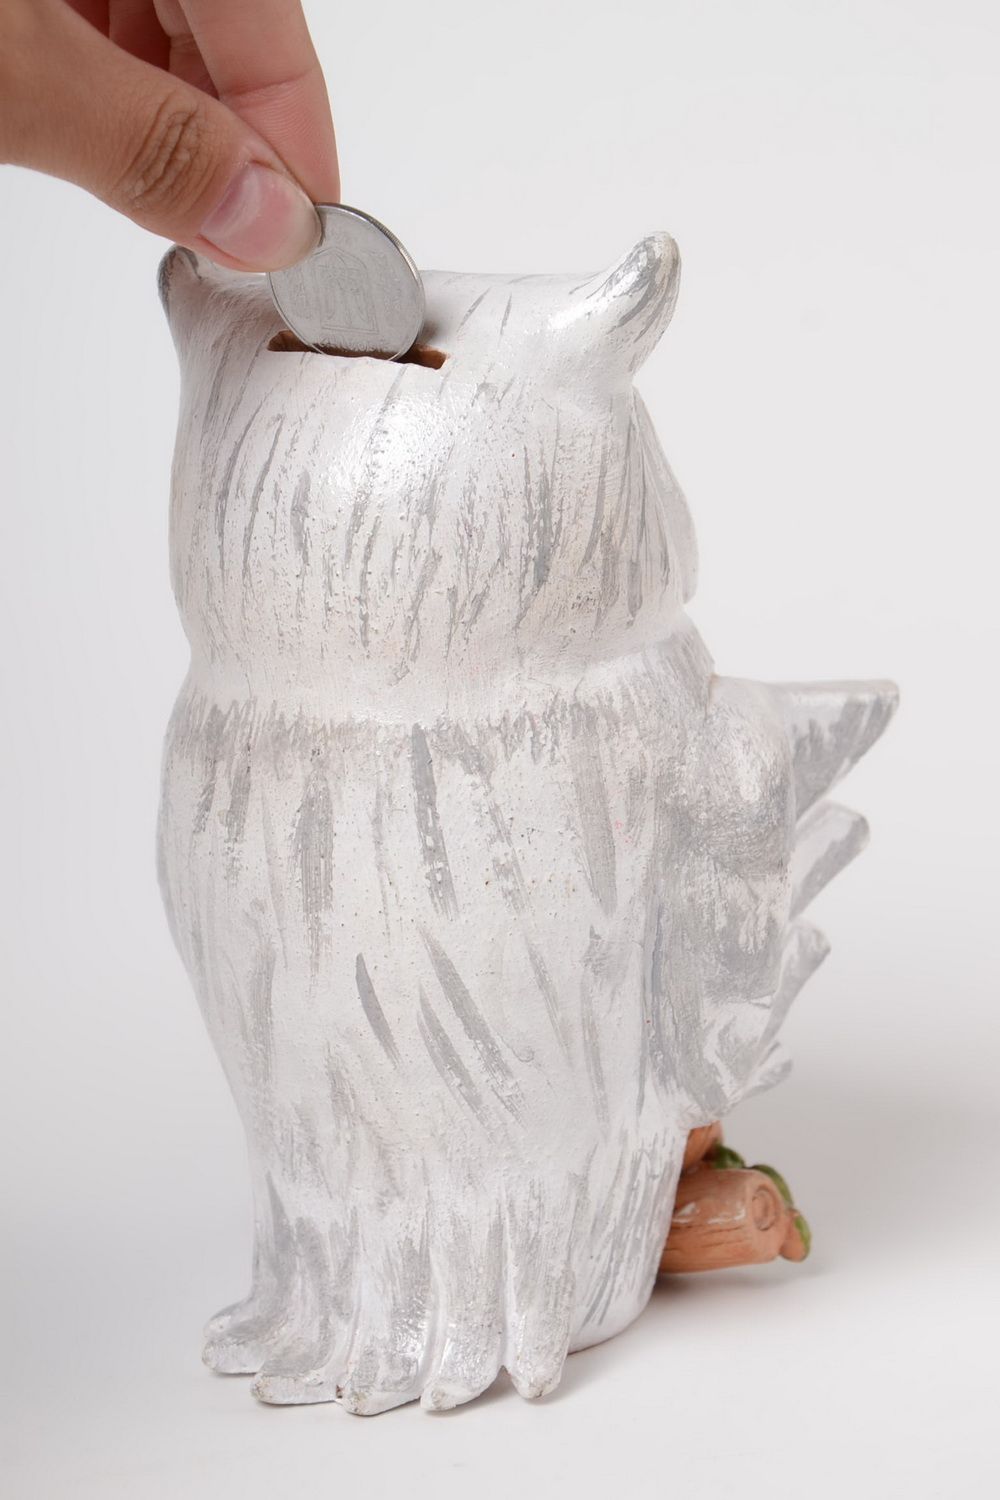 Große Sparbüchse Eule aus Ton weiß ethnisch handmade mit Acrylfarben bemalt foto 3